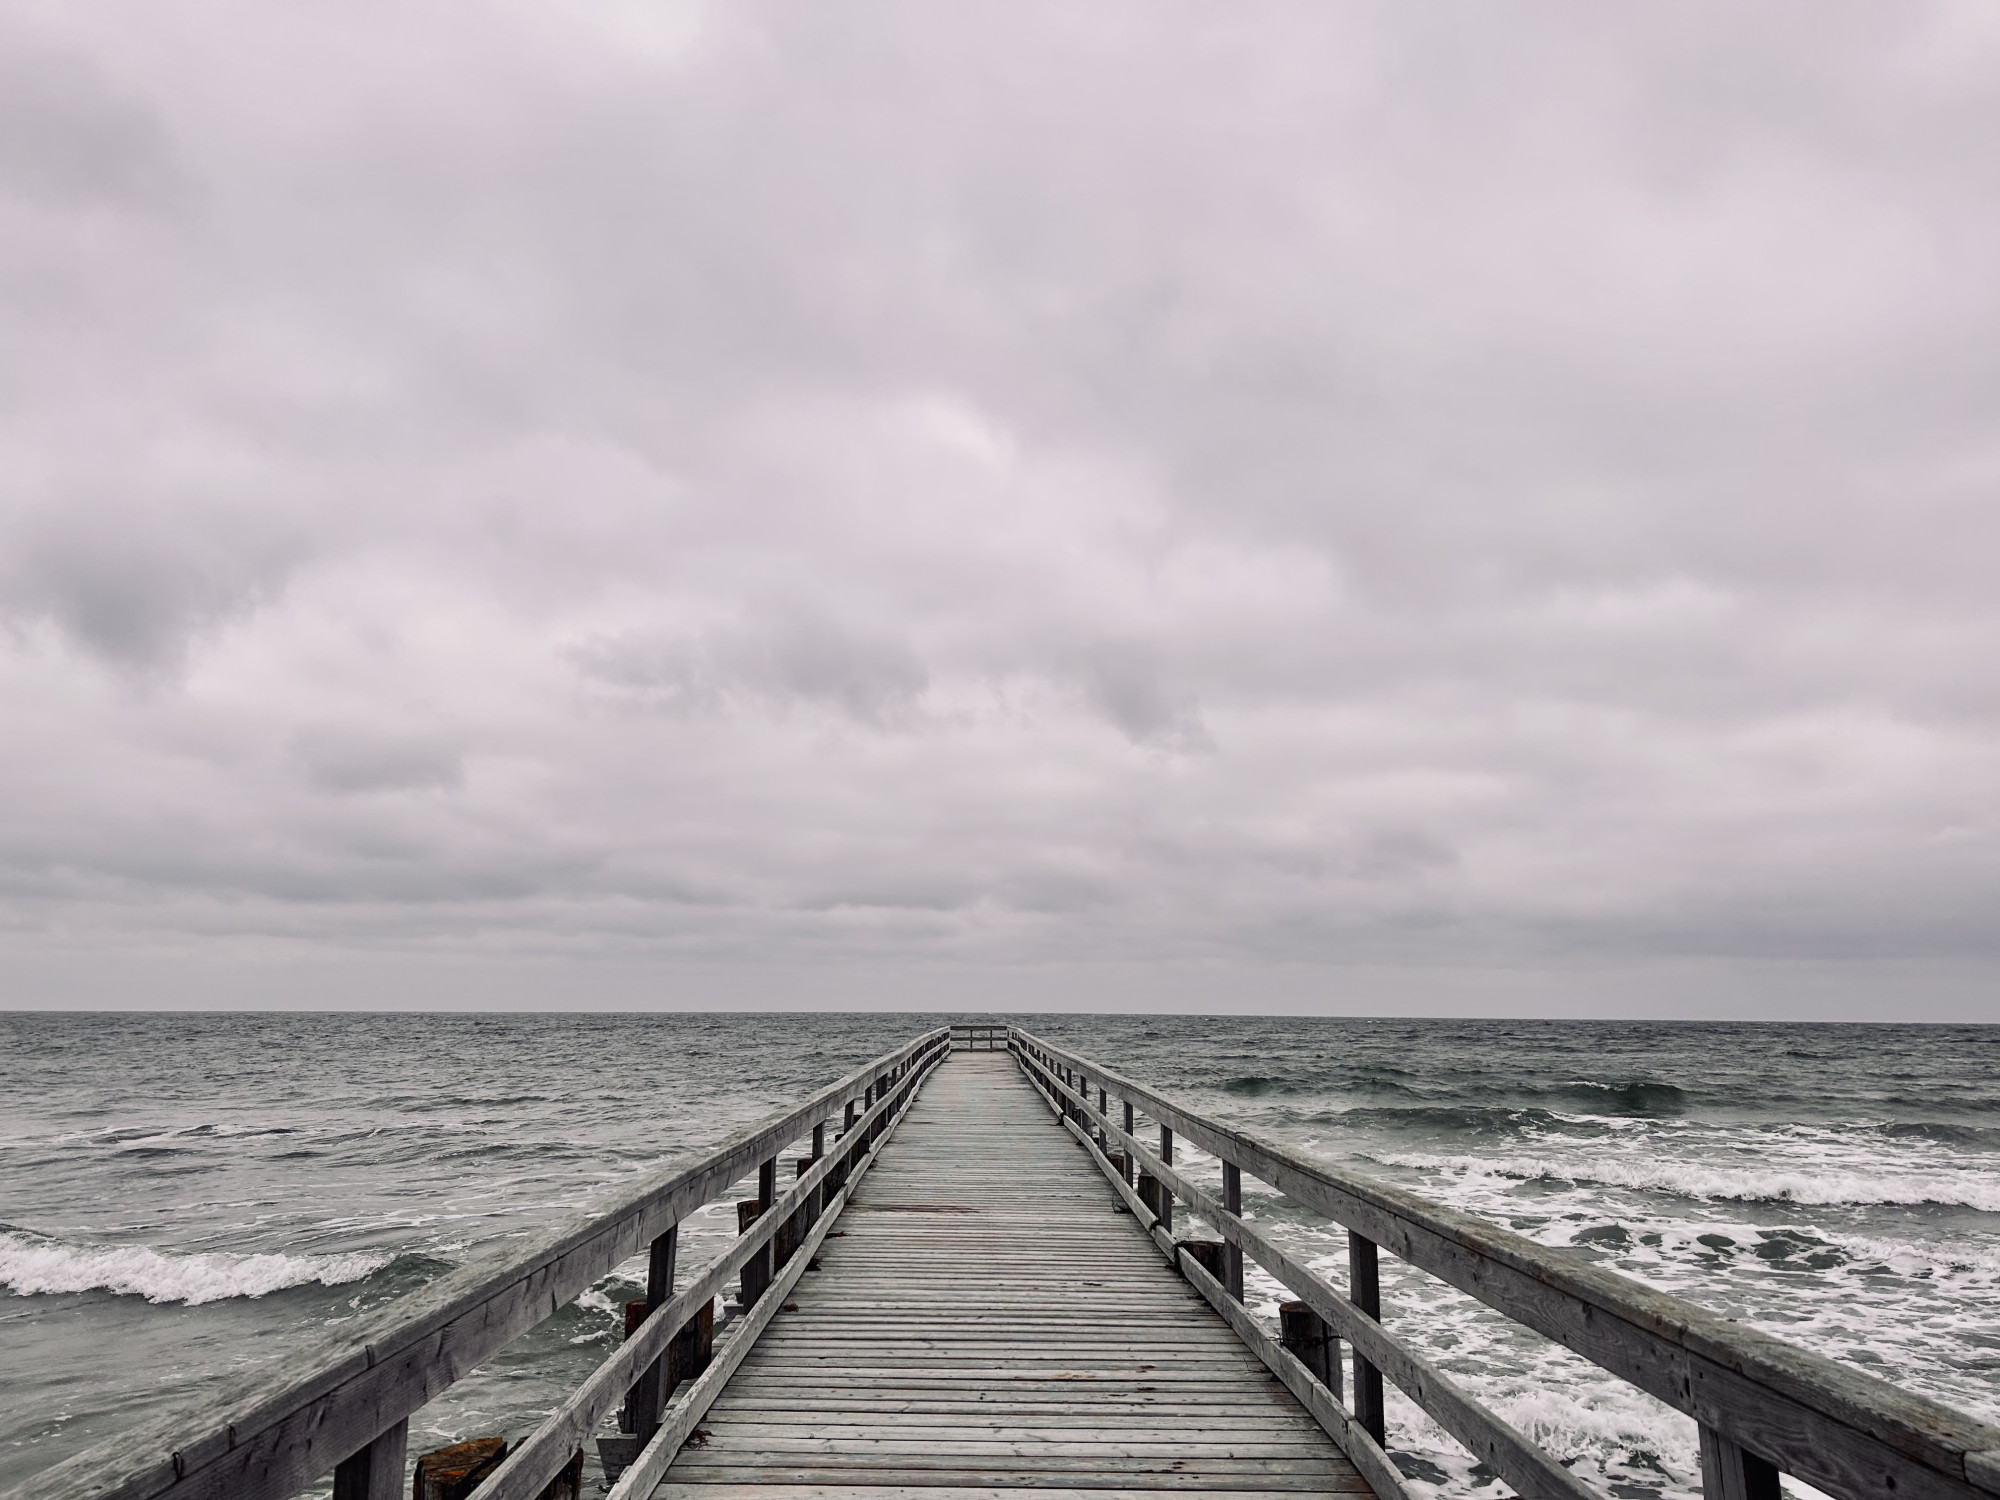 Ein grauer wolkenverhangener Himmel über dem unruhigen blaugrünen Meer.Im Vordergrund bis zum Horizont eine graue Holzbrücke.